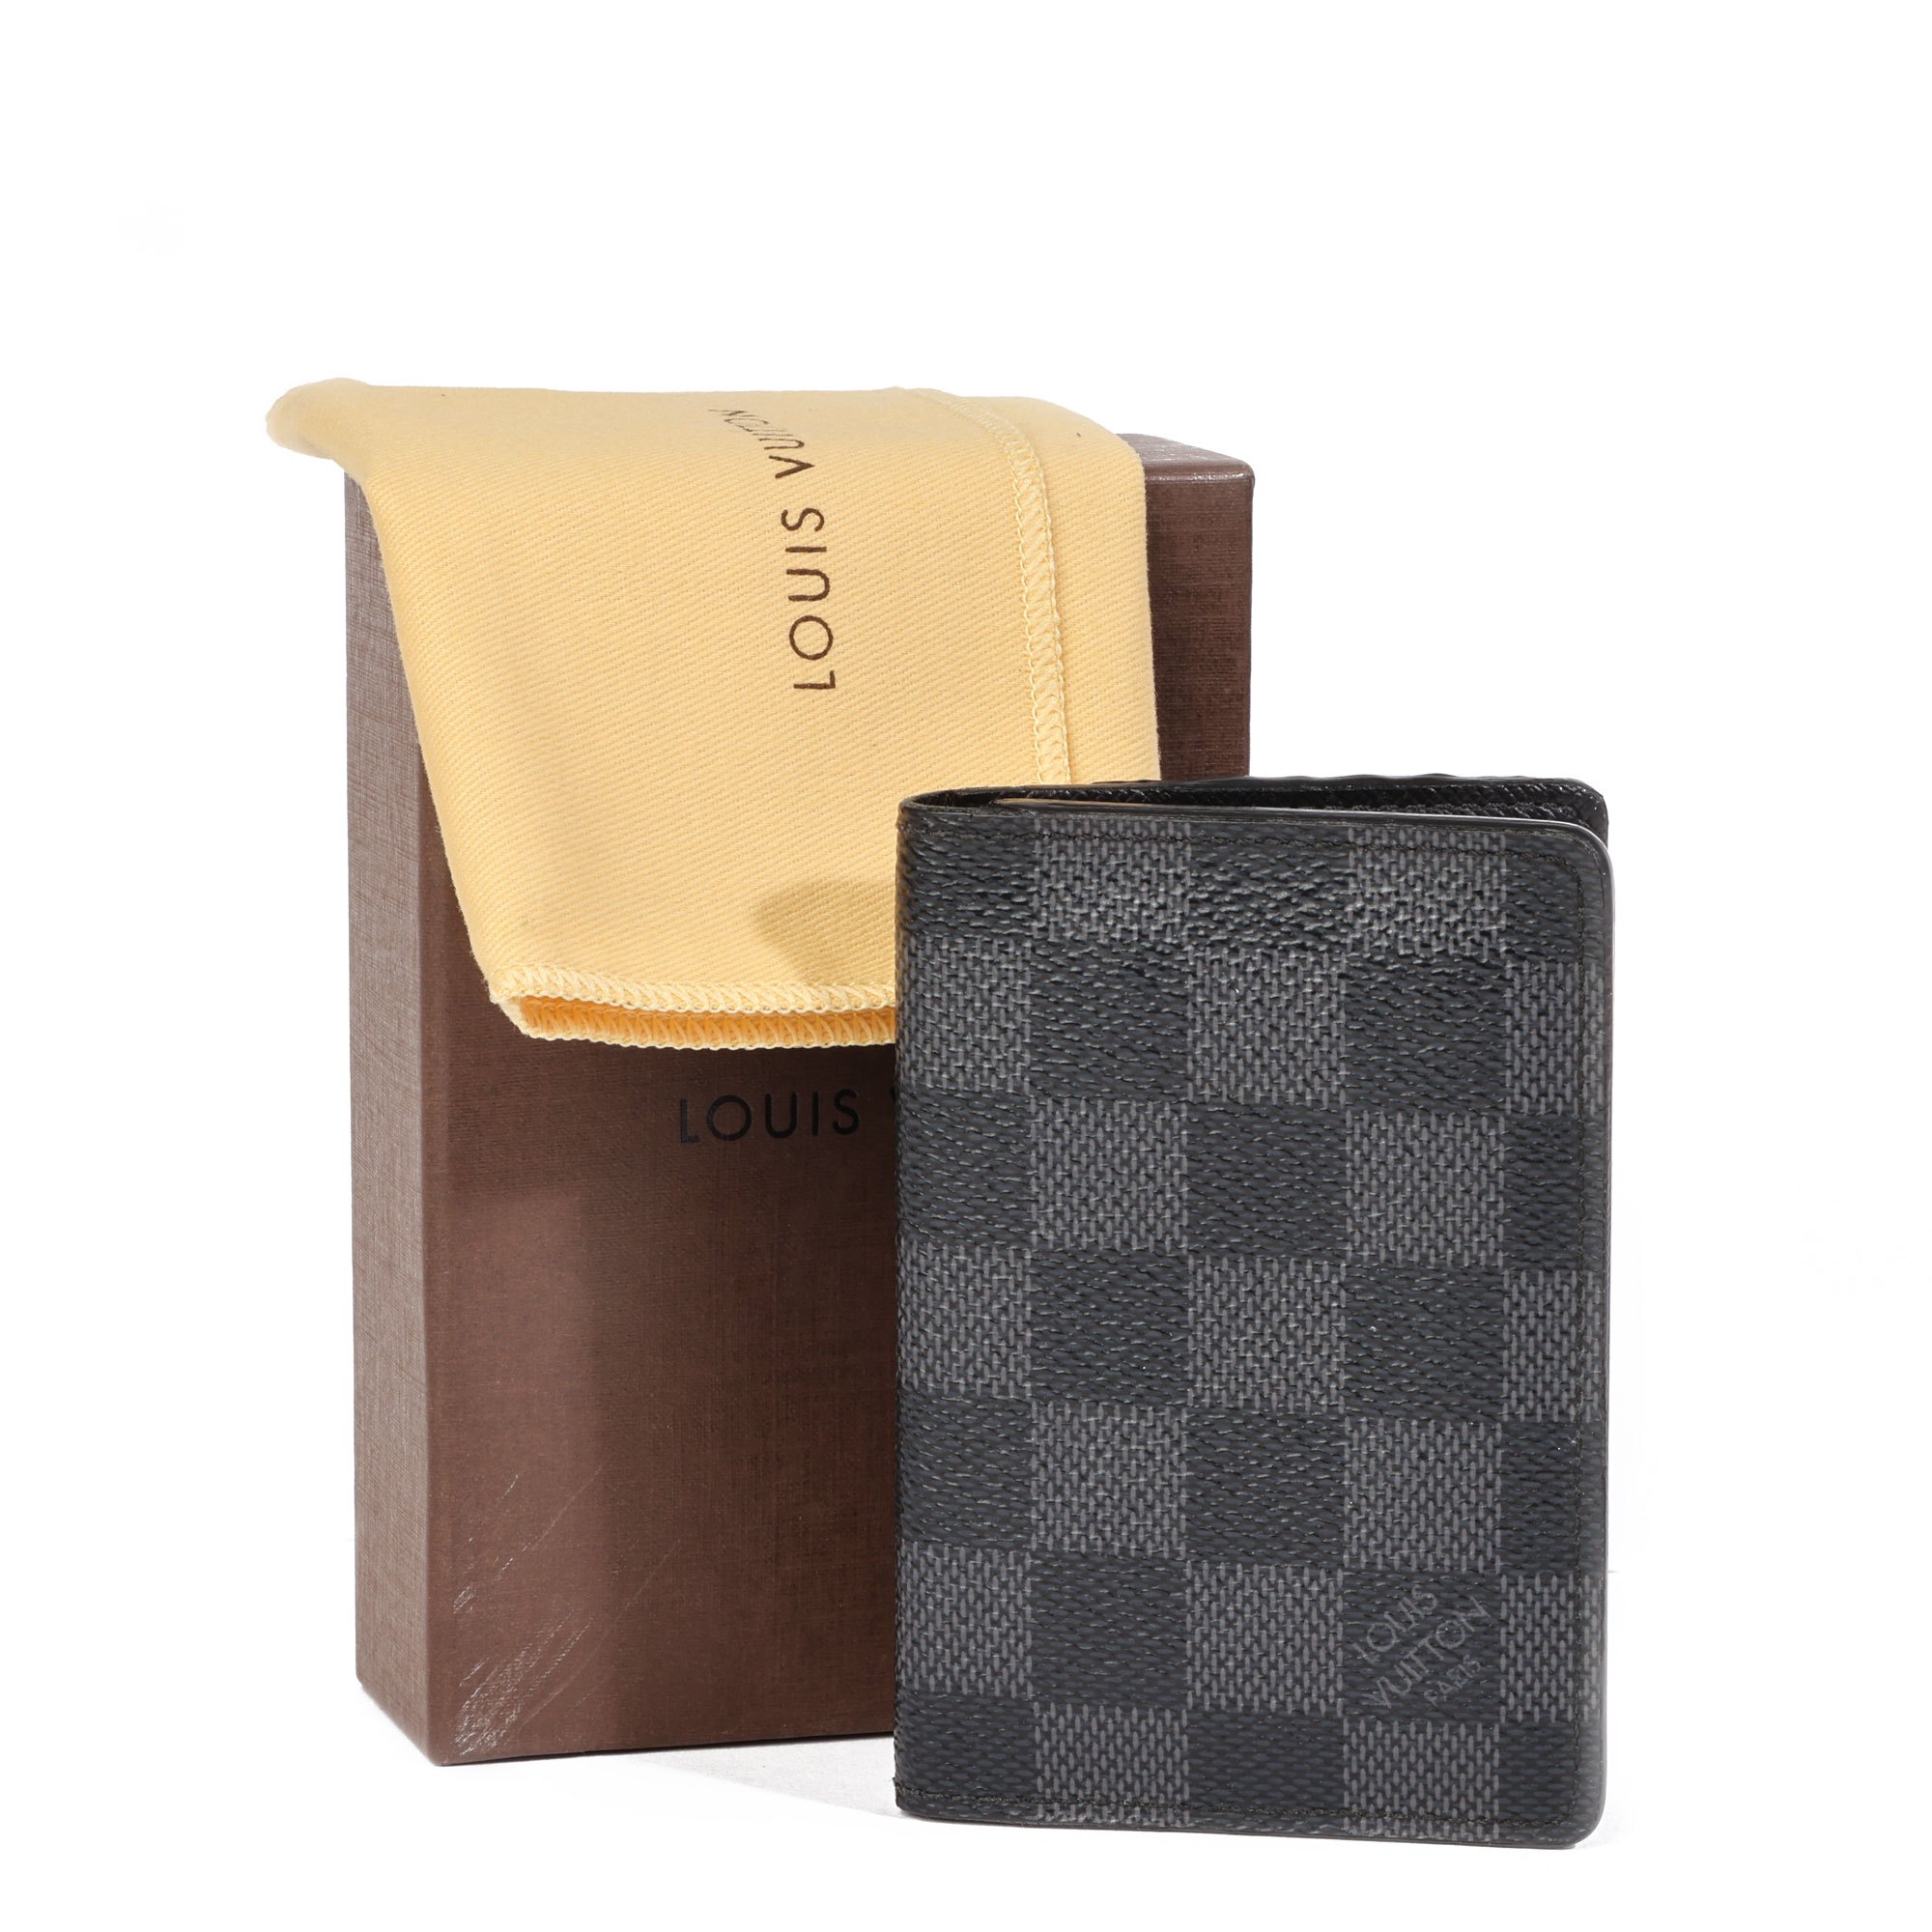 Louis Vuitton Graphite Damier Compact Wallet